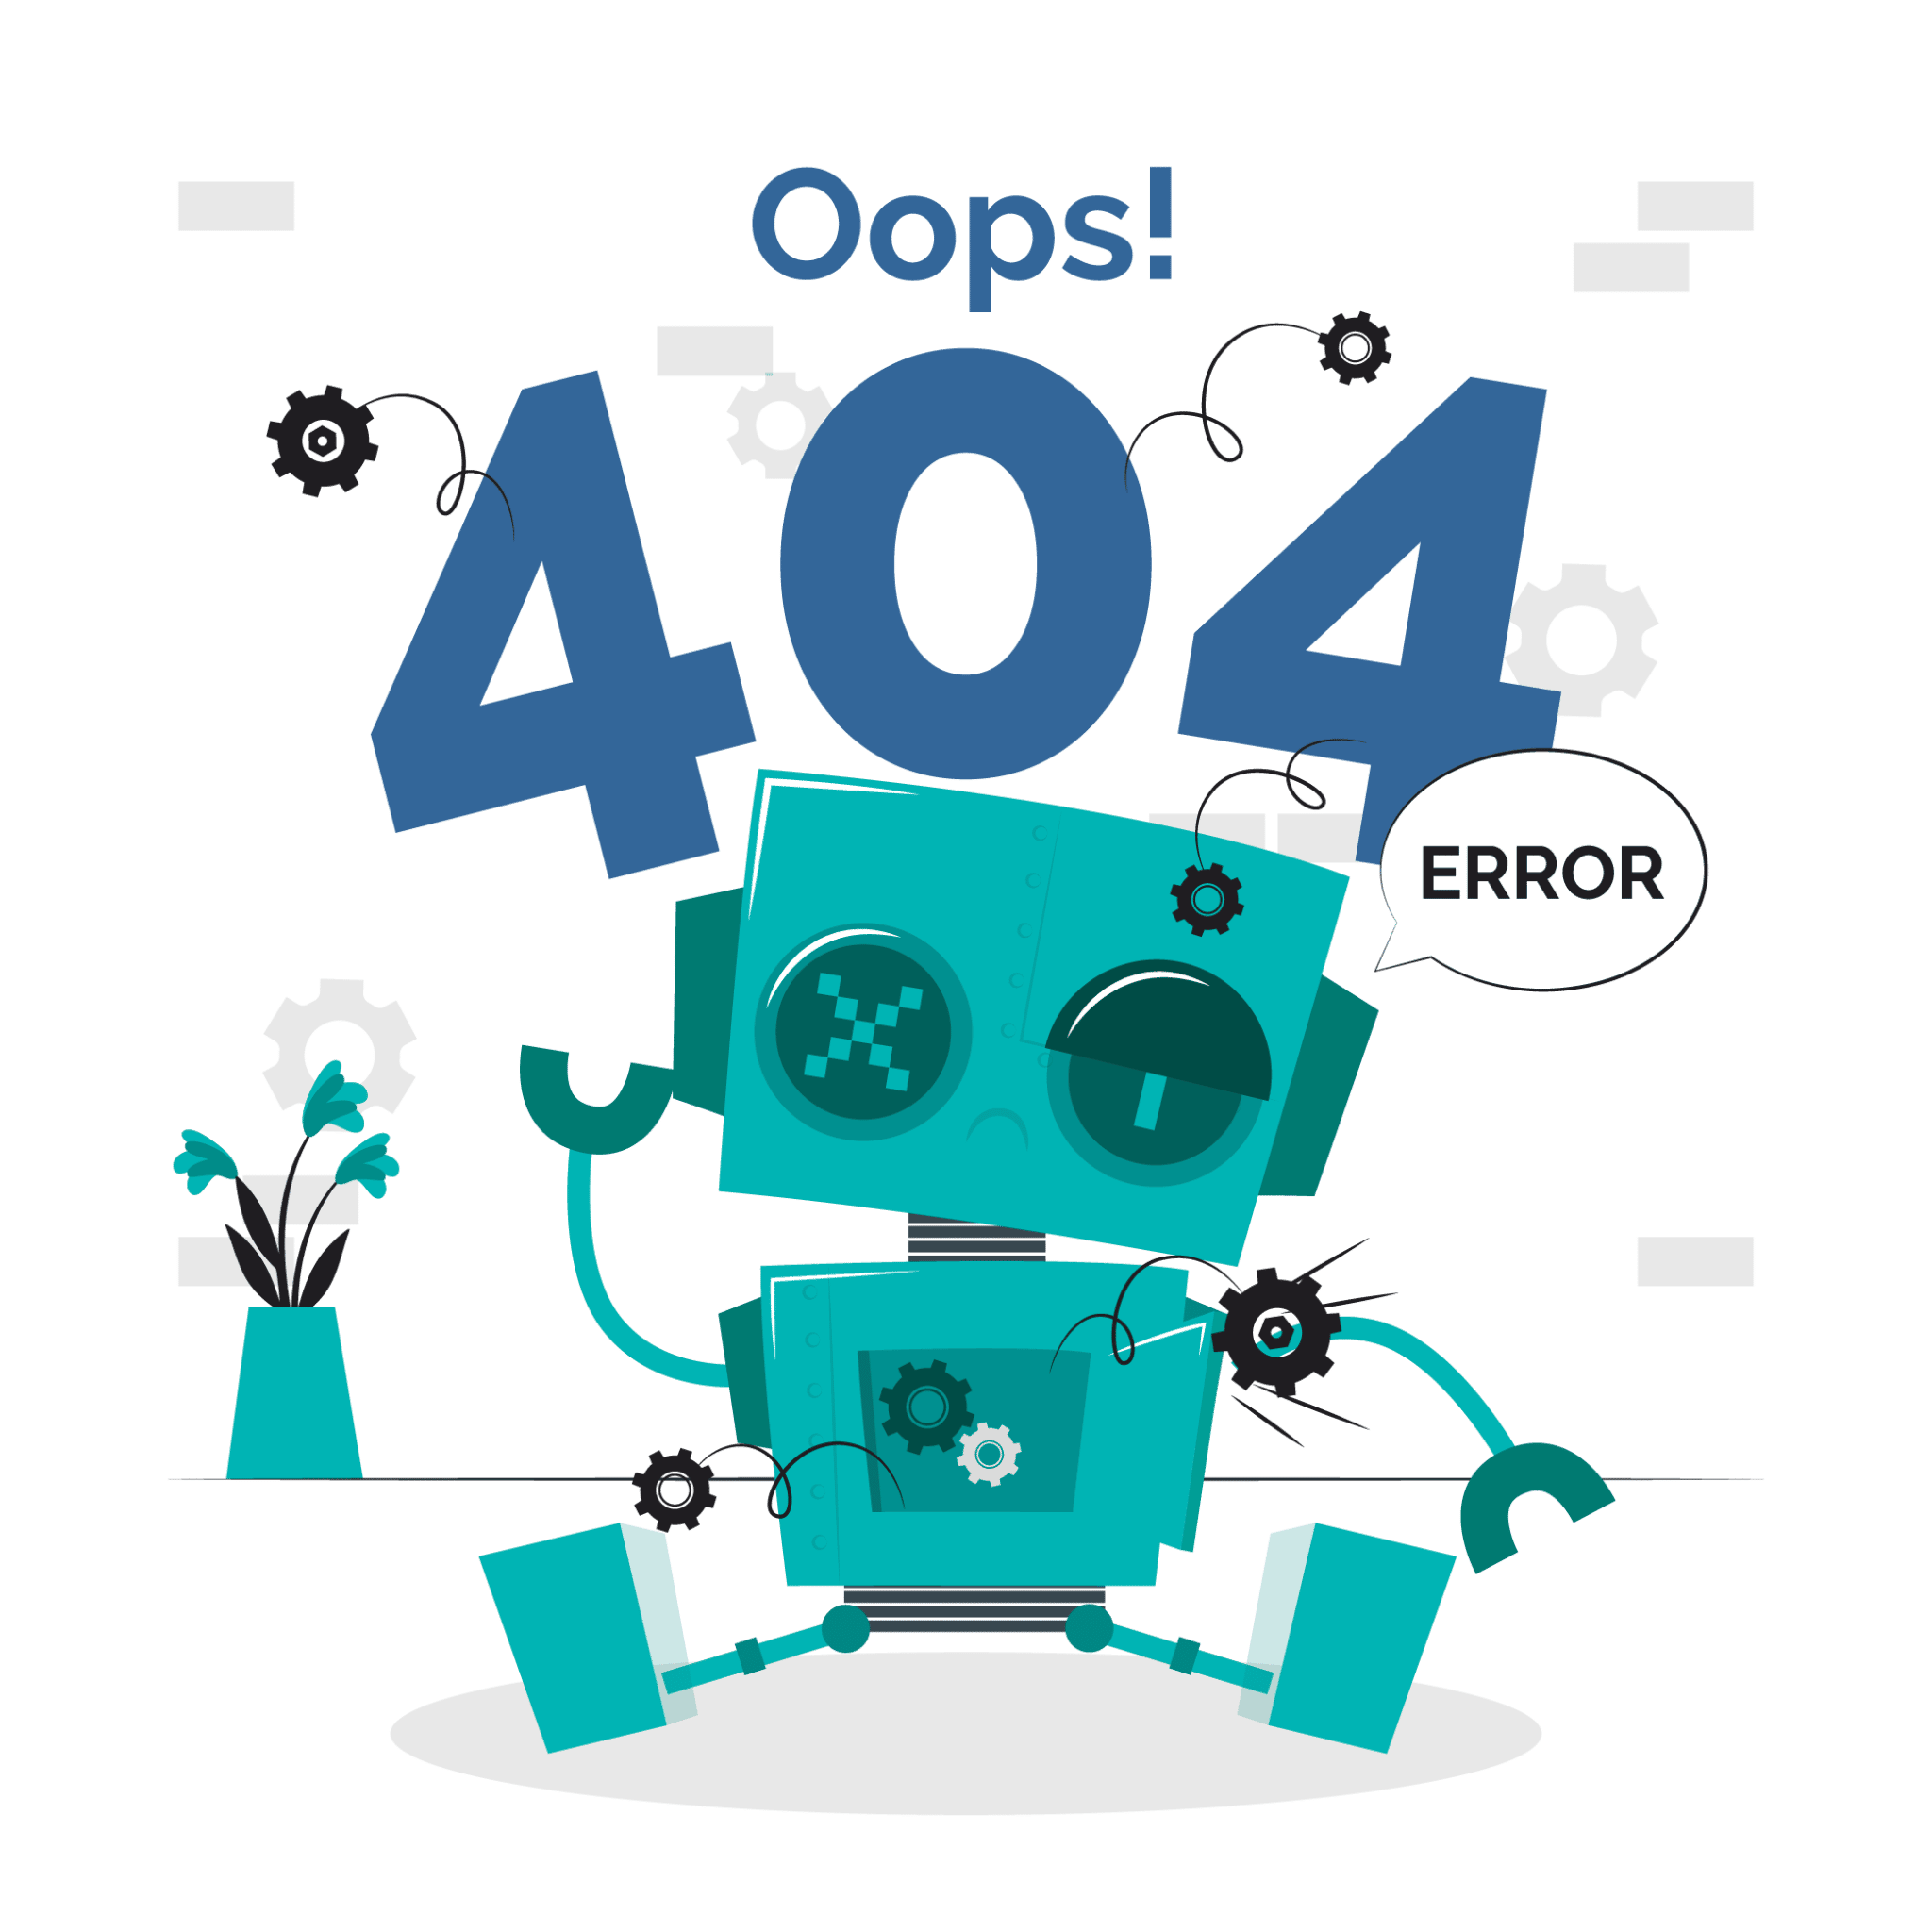 404 Error Graphic